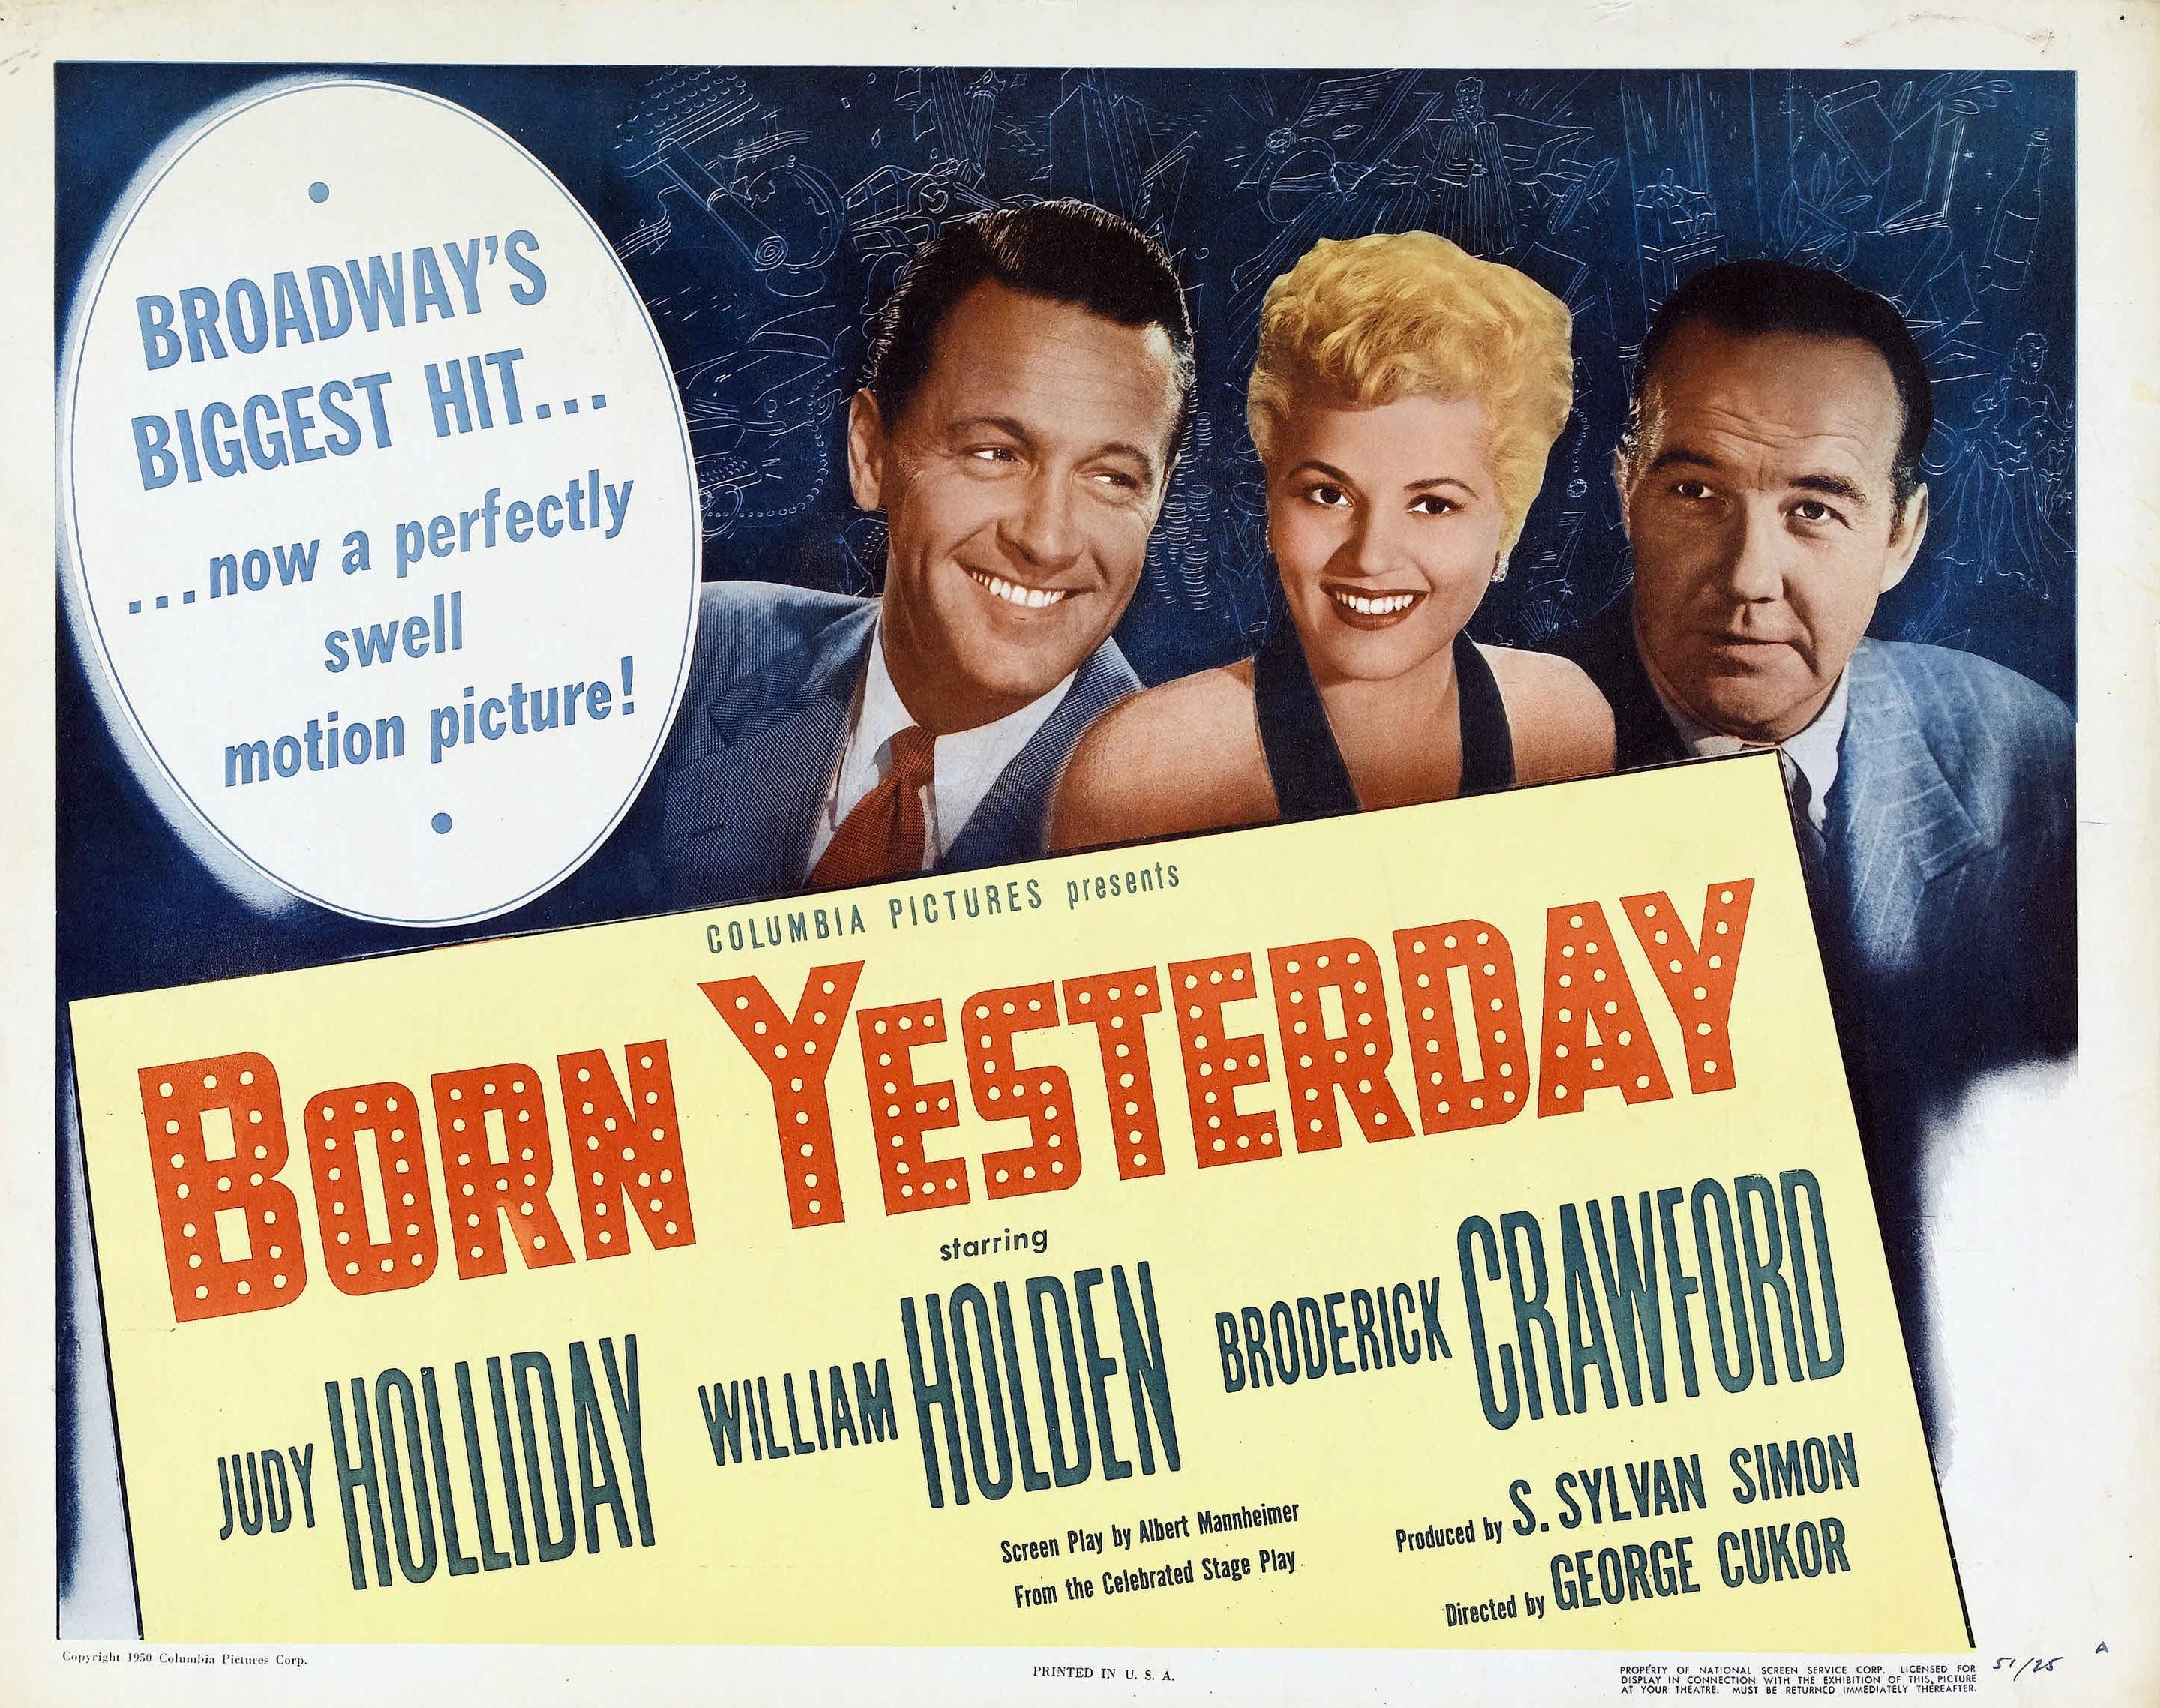 Постер фильма Рожденная вчера | Born Yesterday